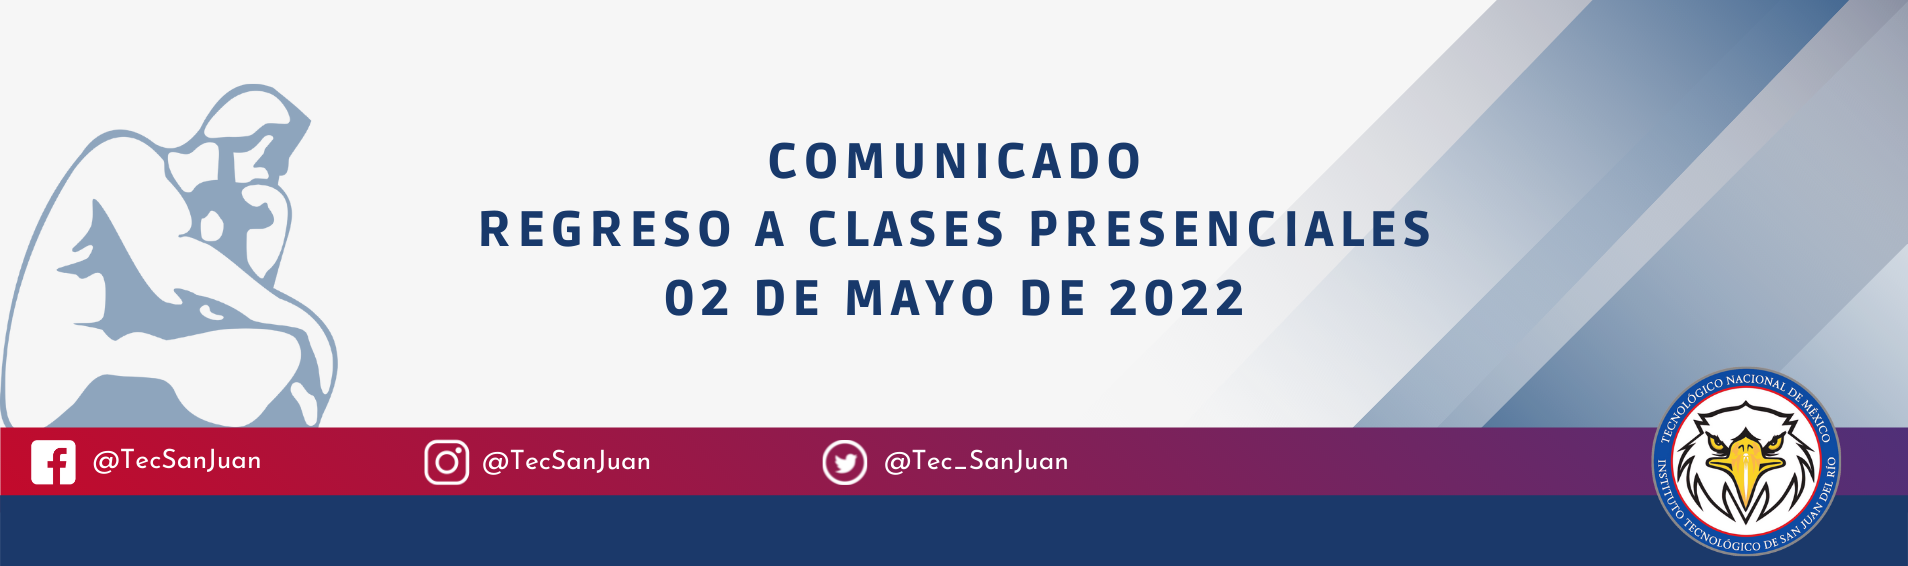 Regreso_a_clases_presenciales_02_mayo_2022